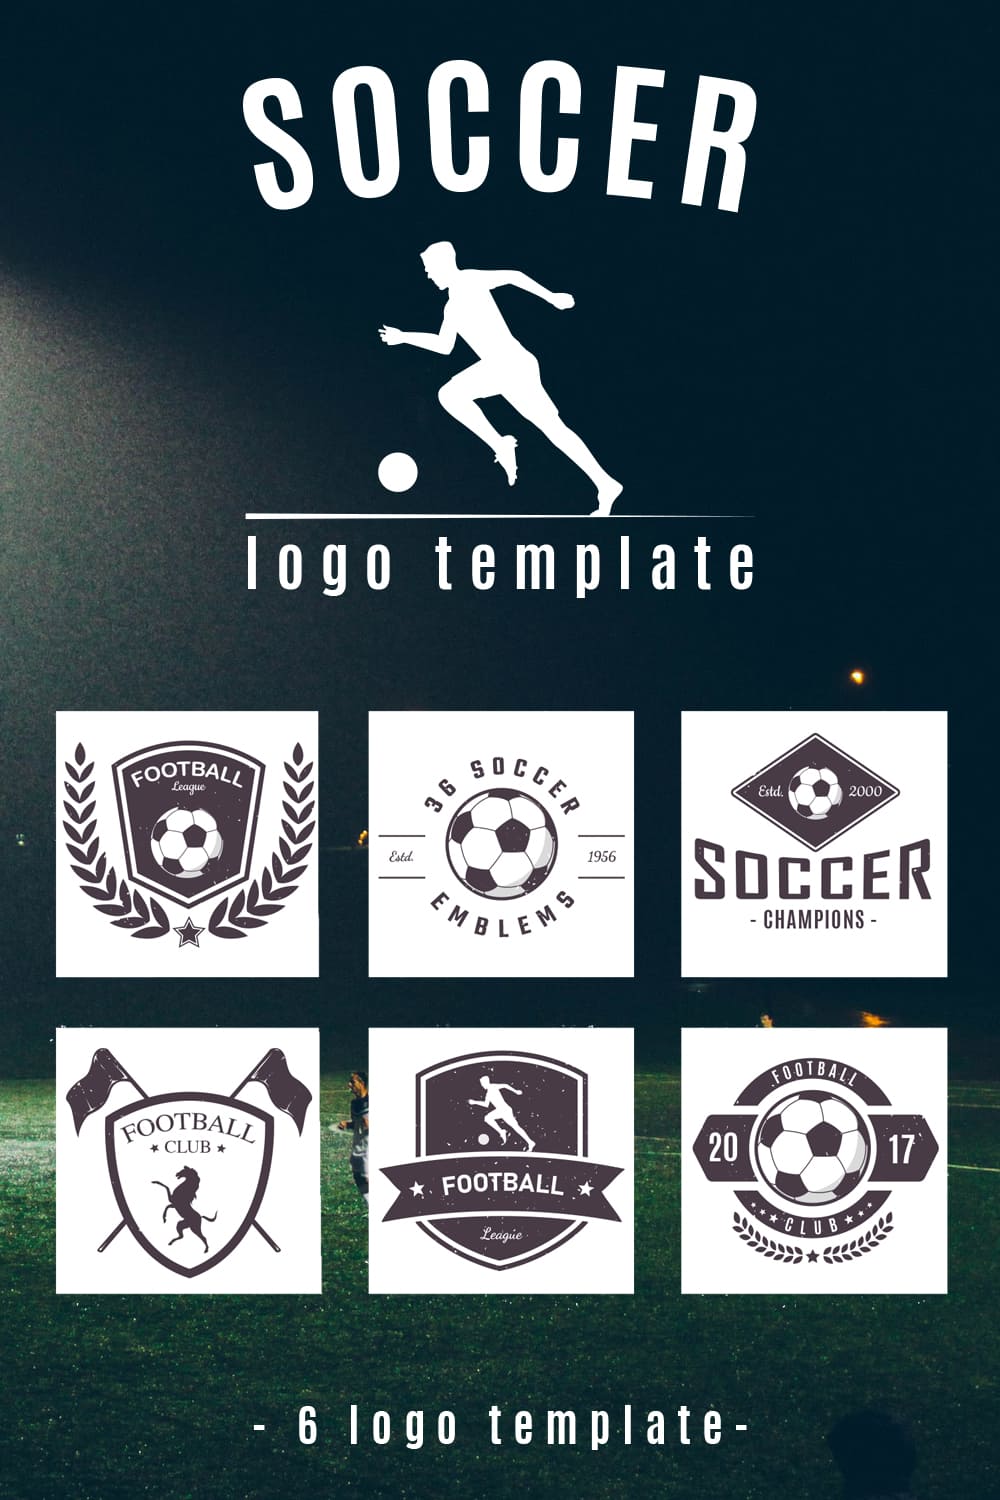 Few options of white soccer logos.